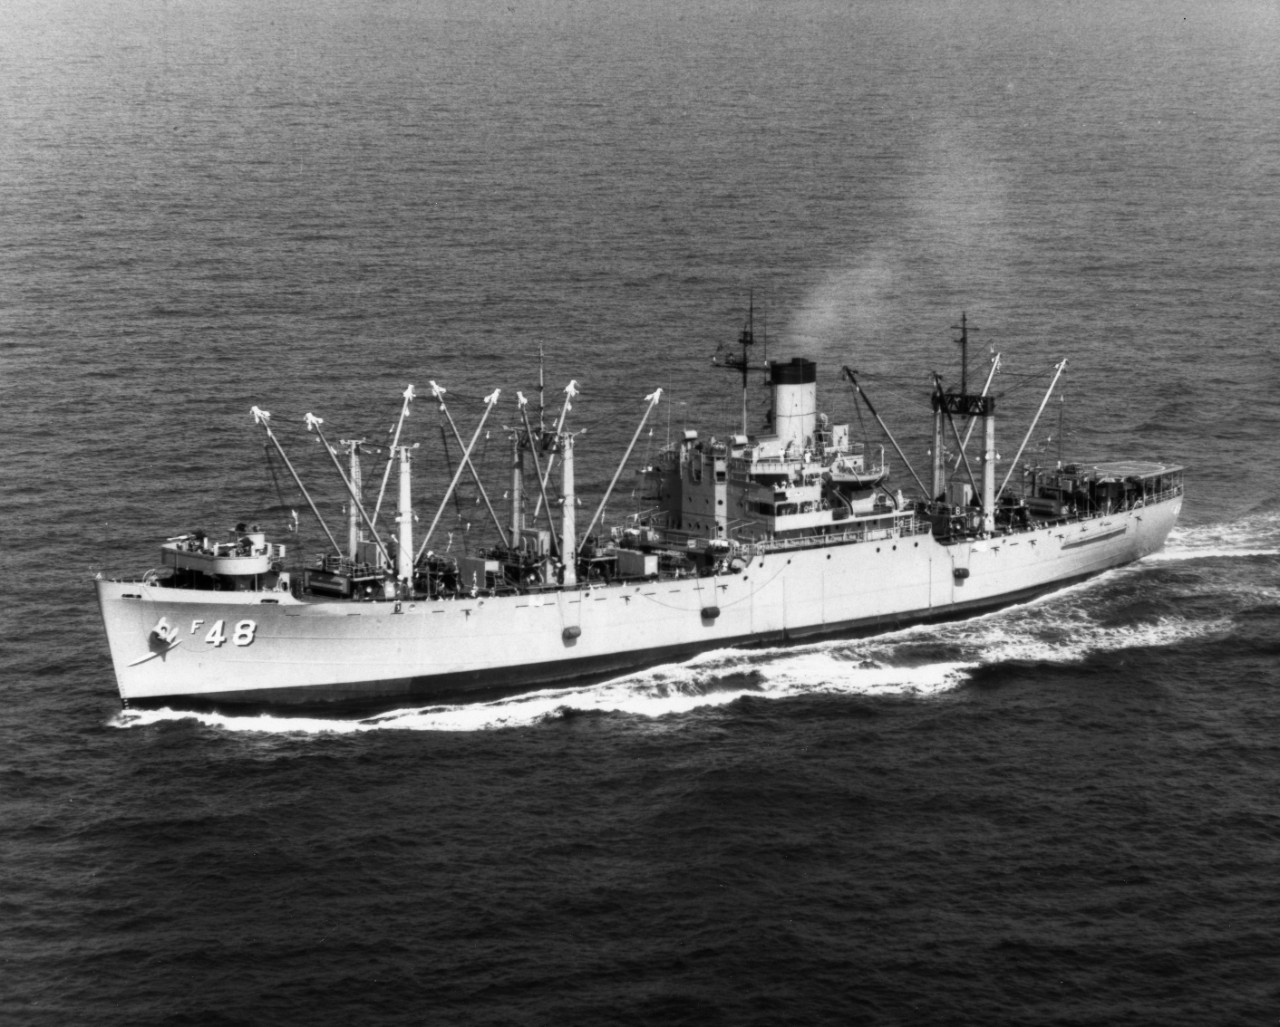 USS Alstede (AF-48)